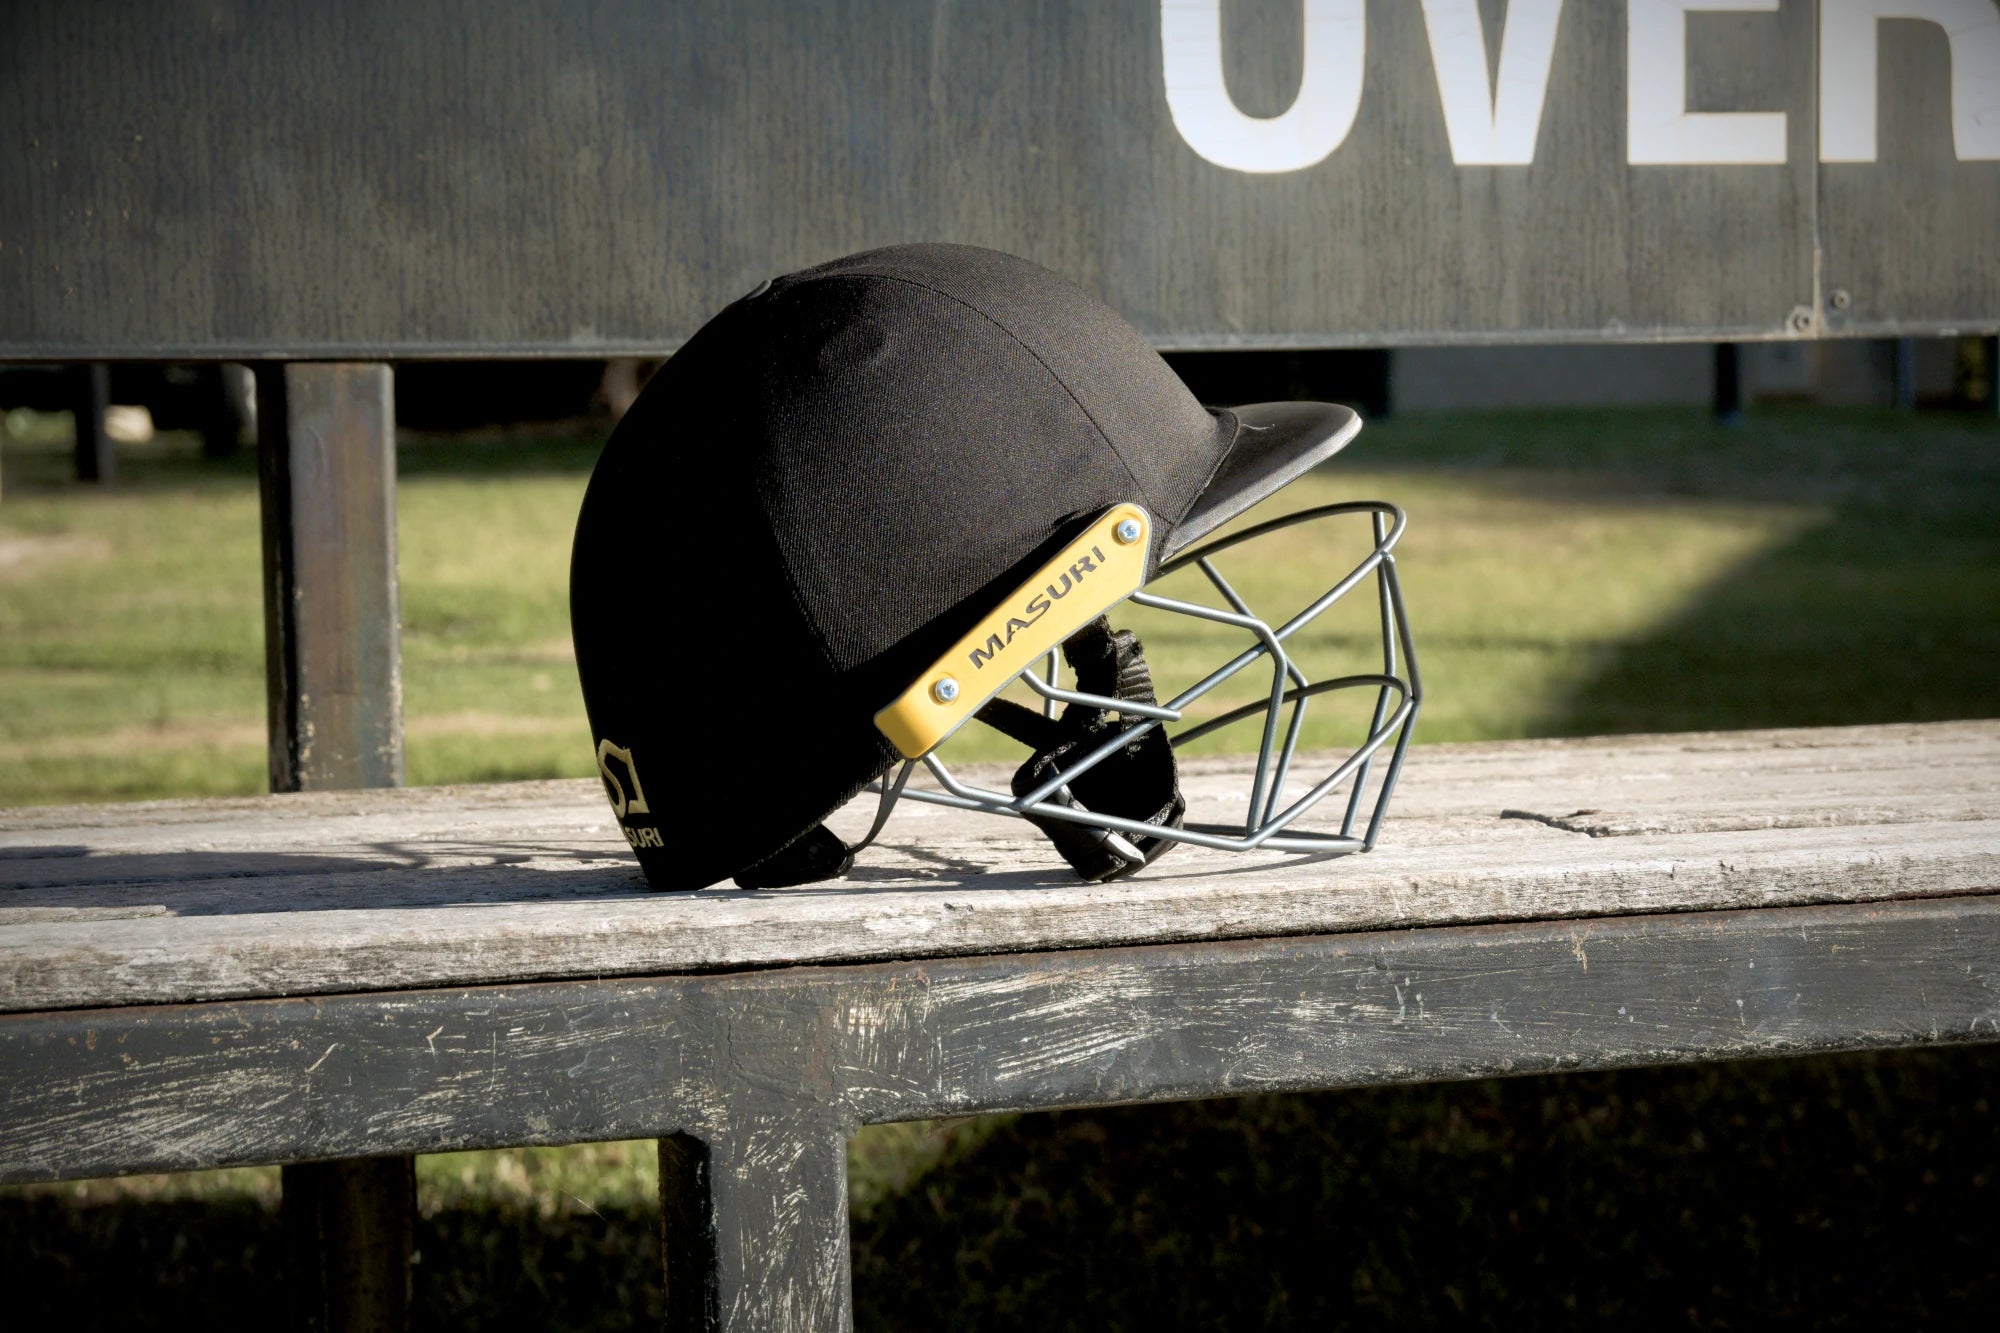 Junior Cricket Helmets